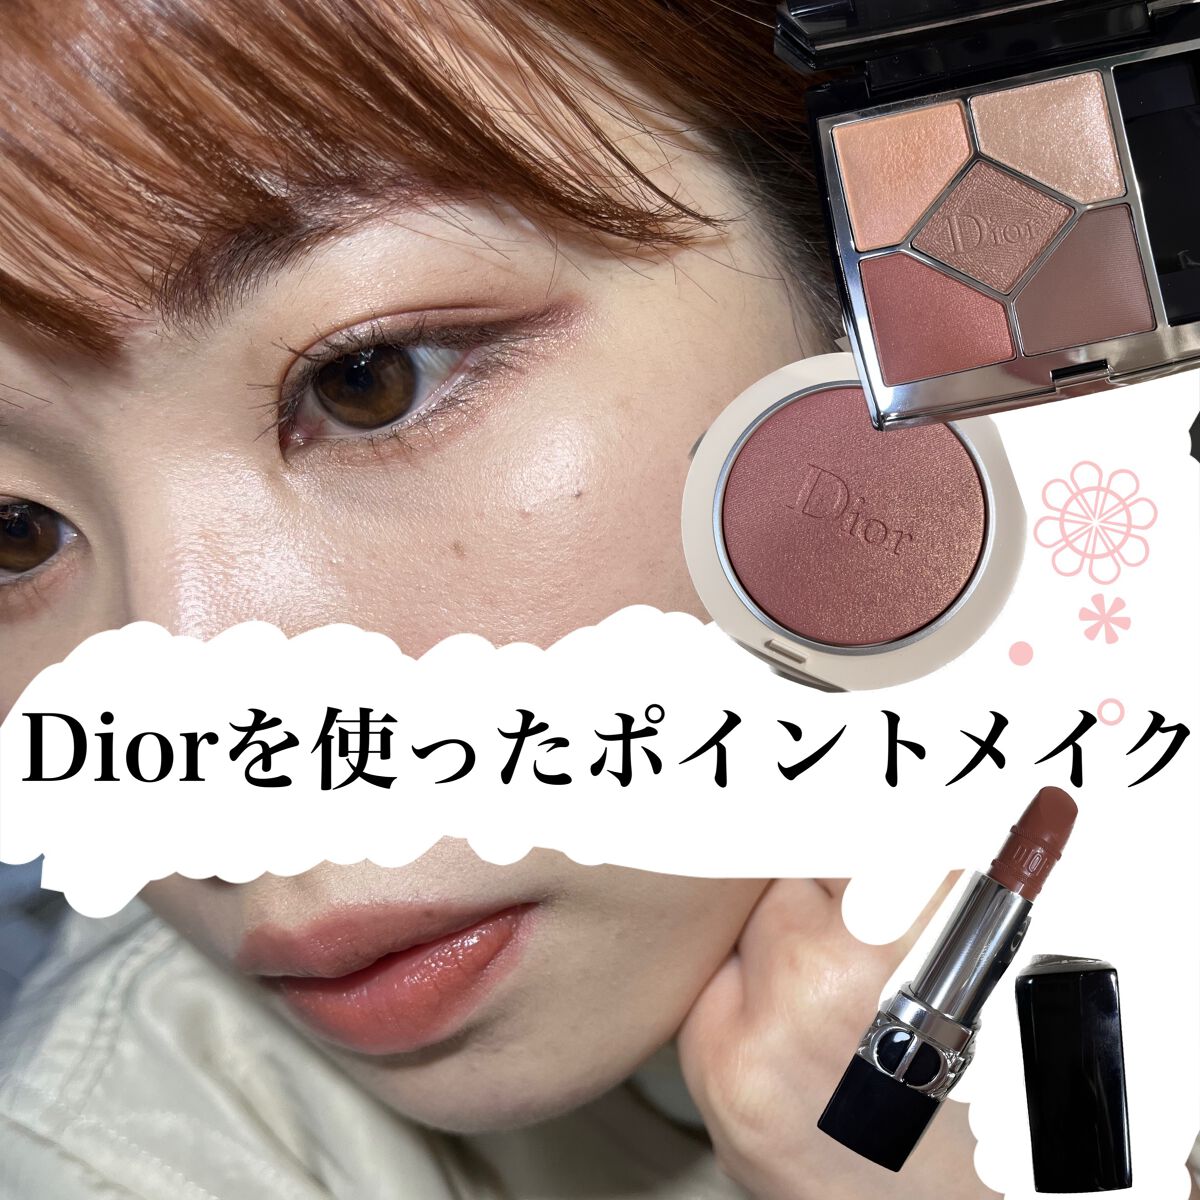 デパコス縛り14点まとめ売り(Dior、SUQQU、three他) ❤直販大阪❤ www